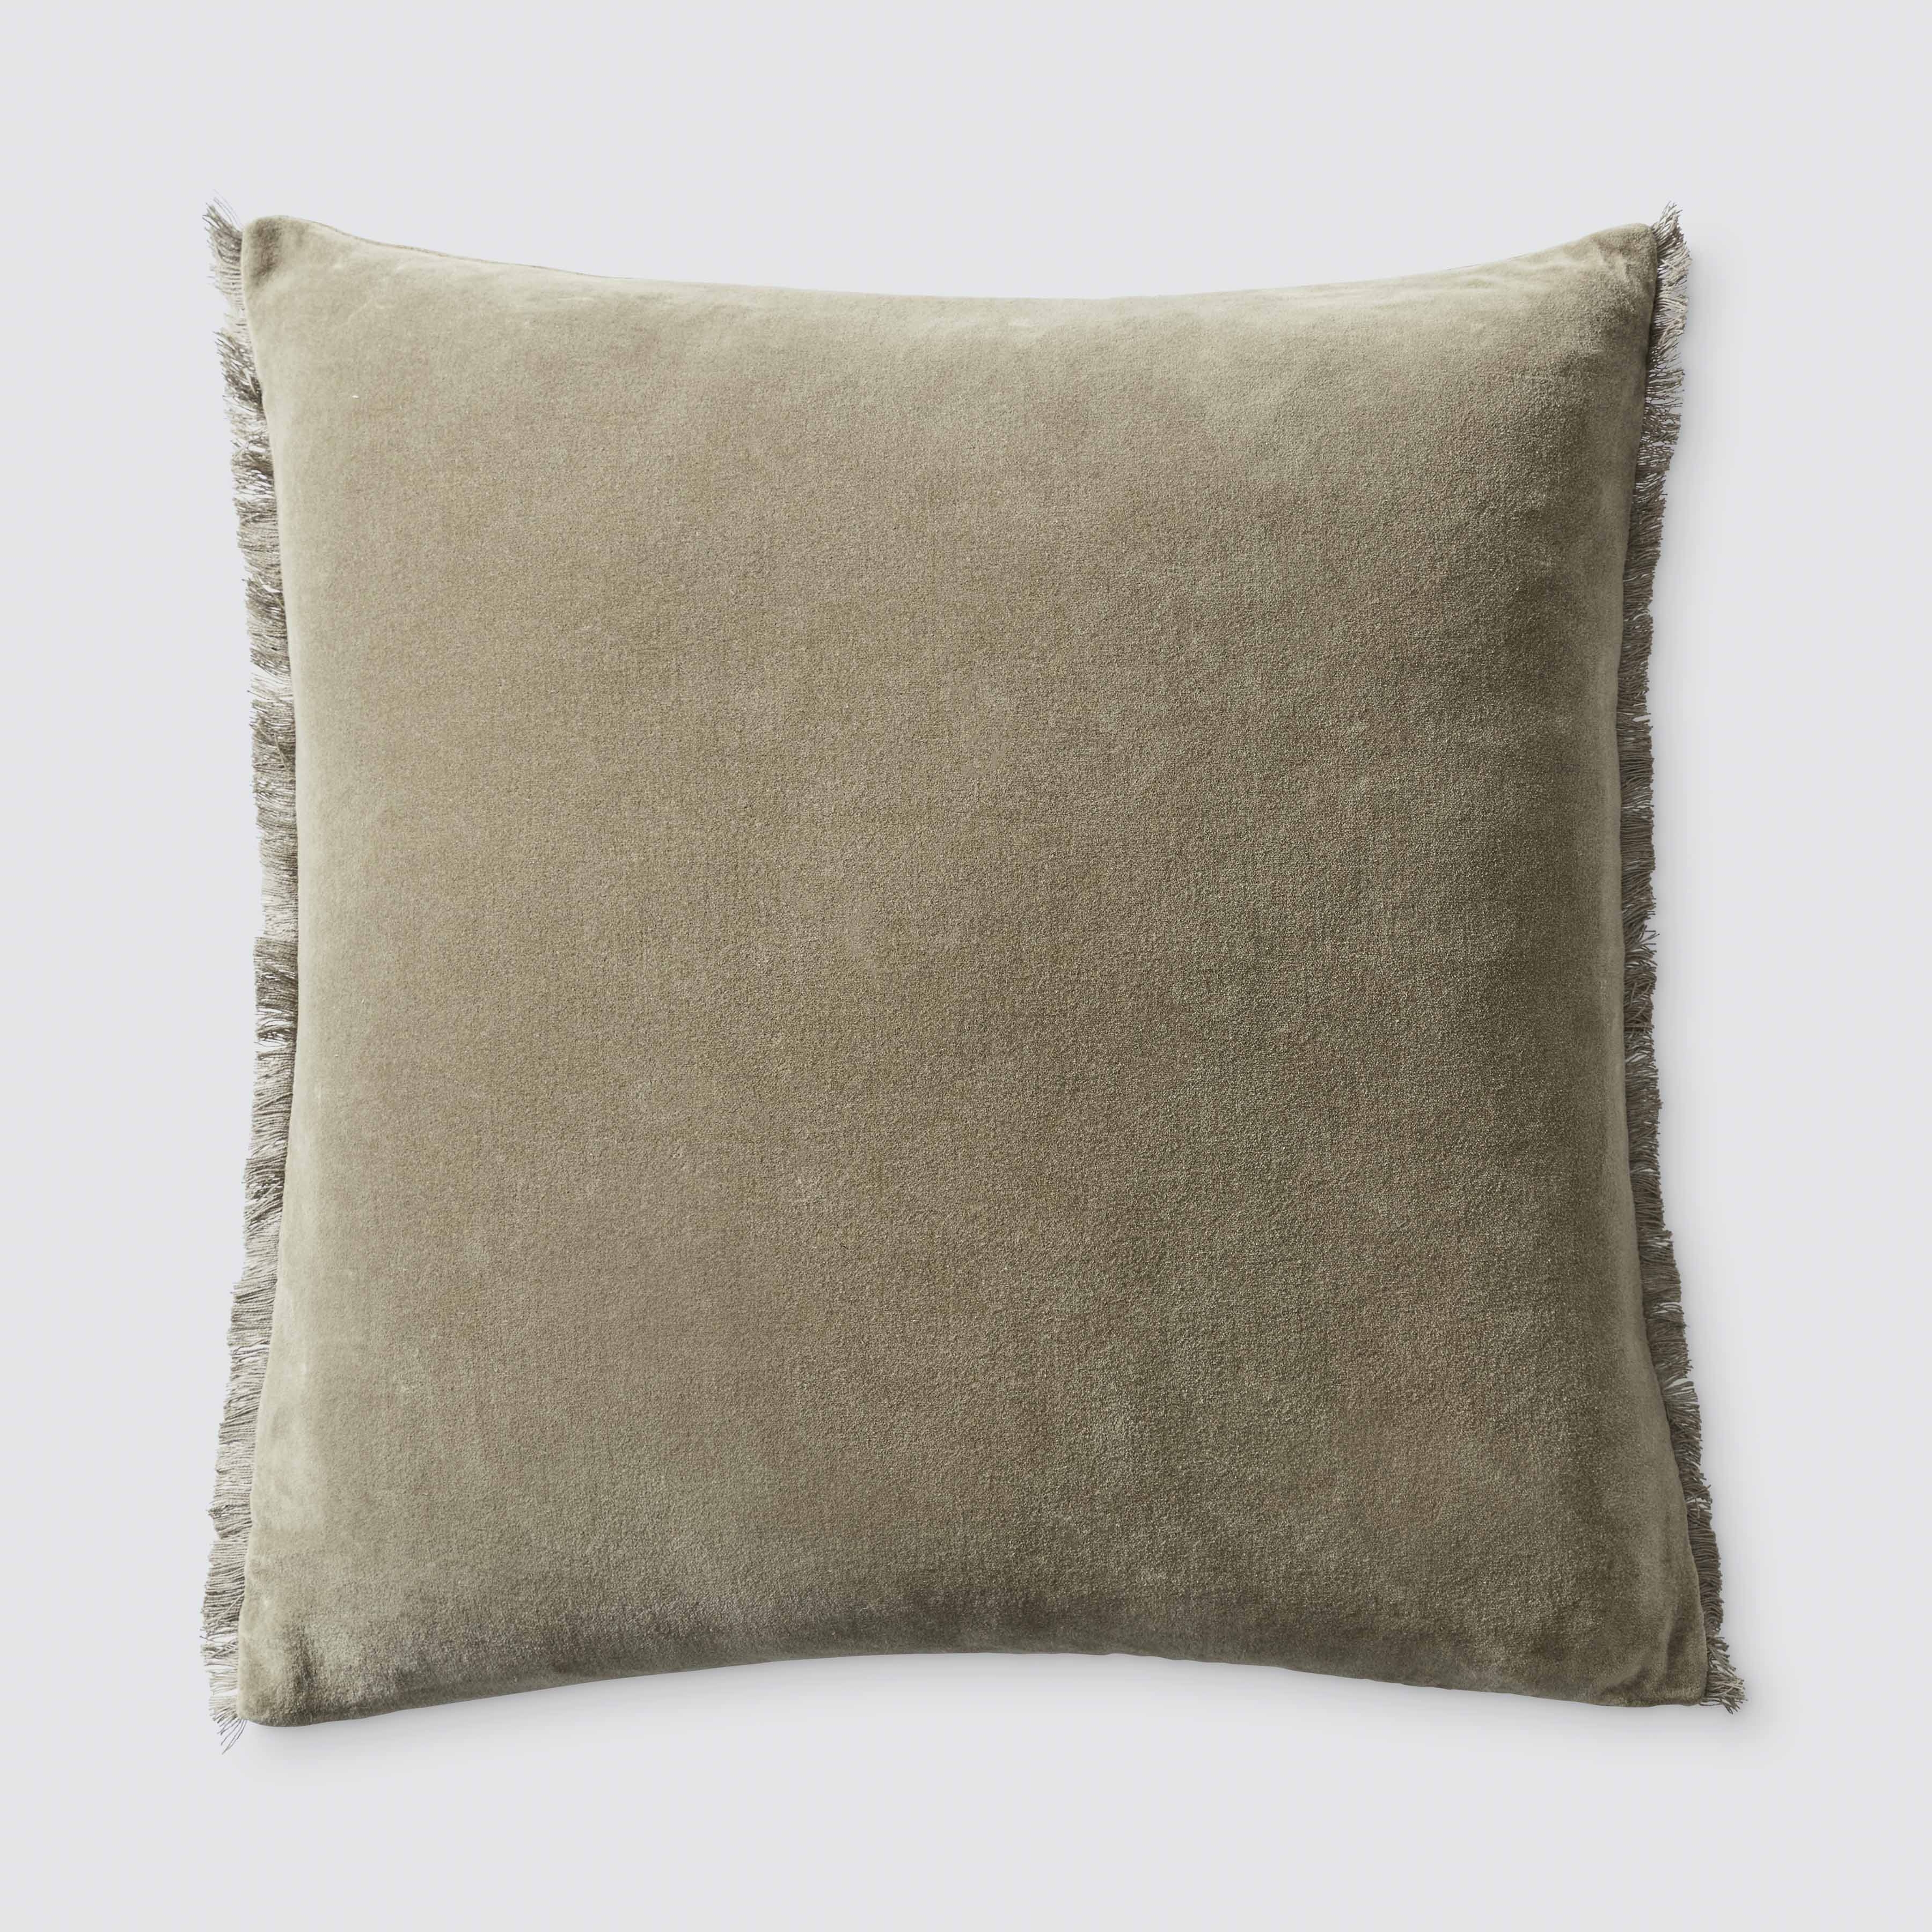 The Citizenry Naveta Velvet Pillow | 18" x 18" | Blue - Image 1